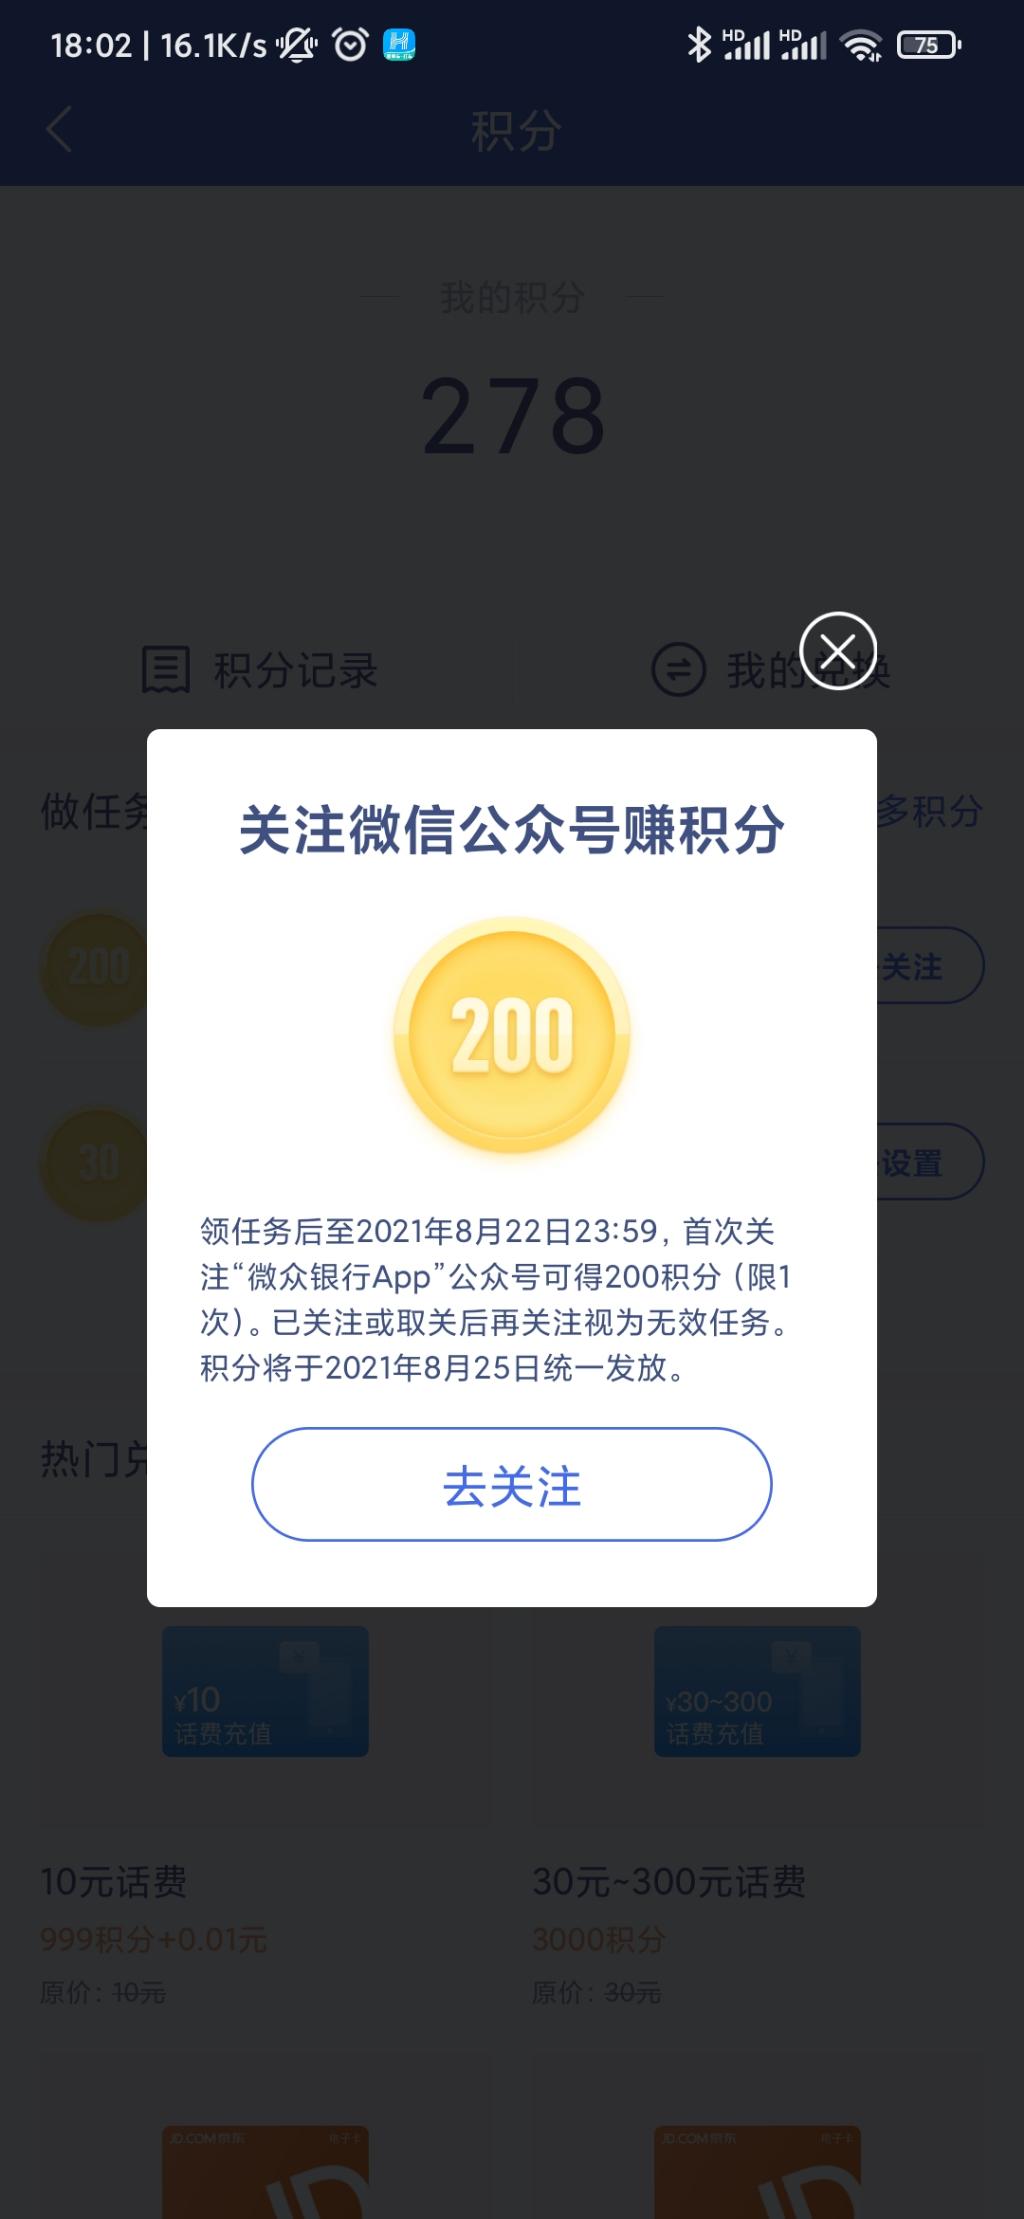 关注微众银行-送200积分-价值2元-惠小助(52huixz.com)